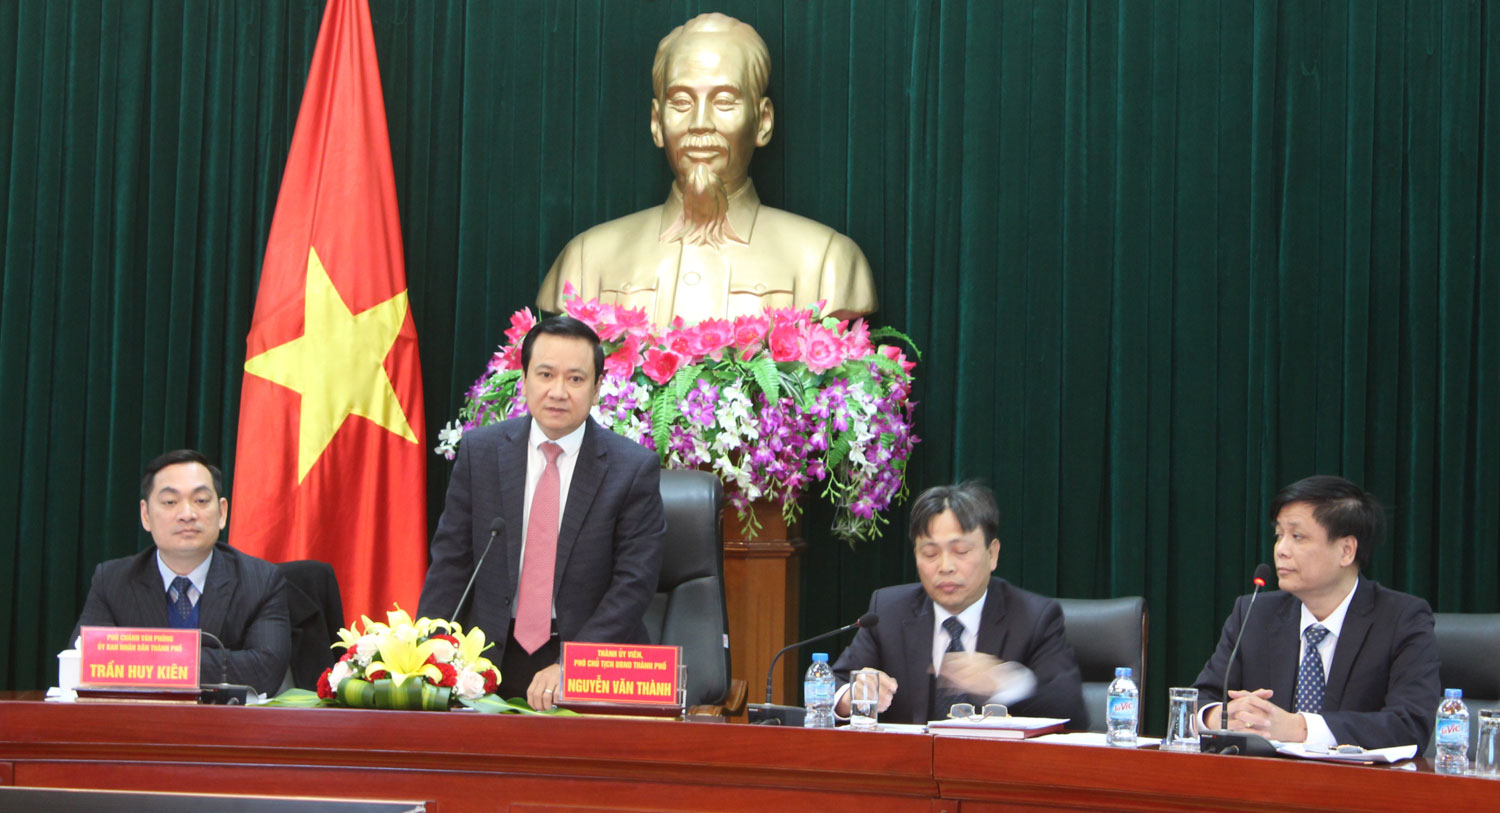 Phó Chủ tịch UBND thành phố Nguyễn Văn Thành phát biểu chỉ đạo tại Hội nghị